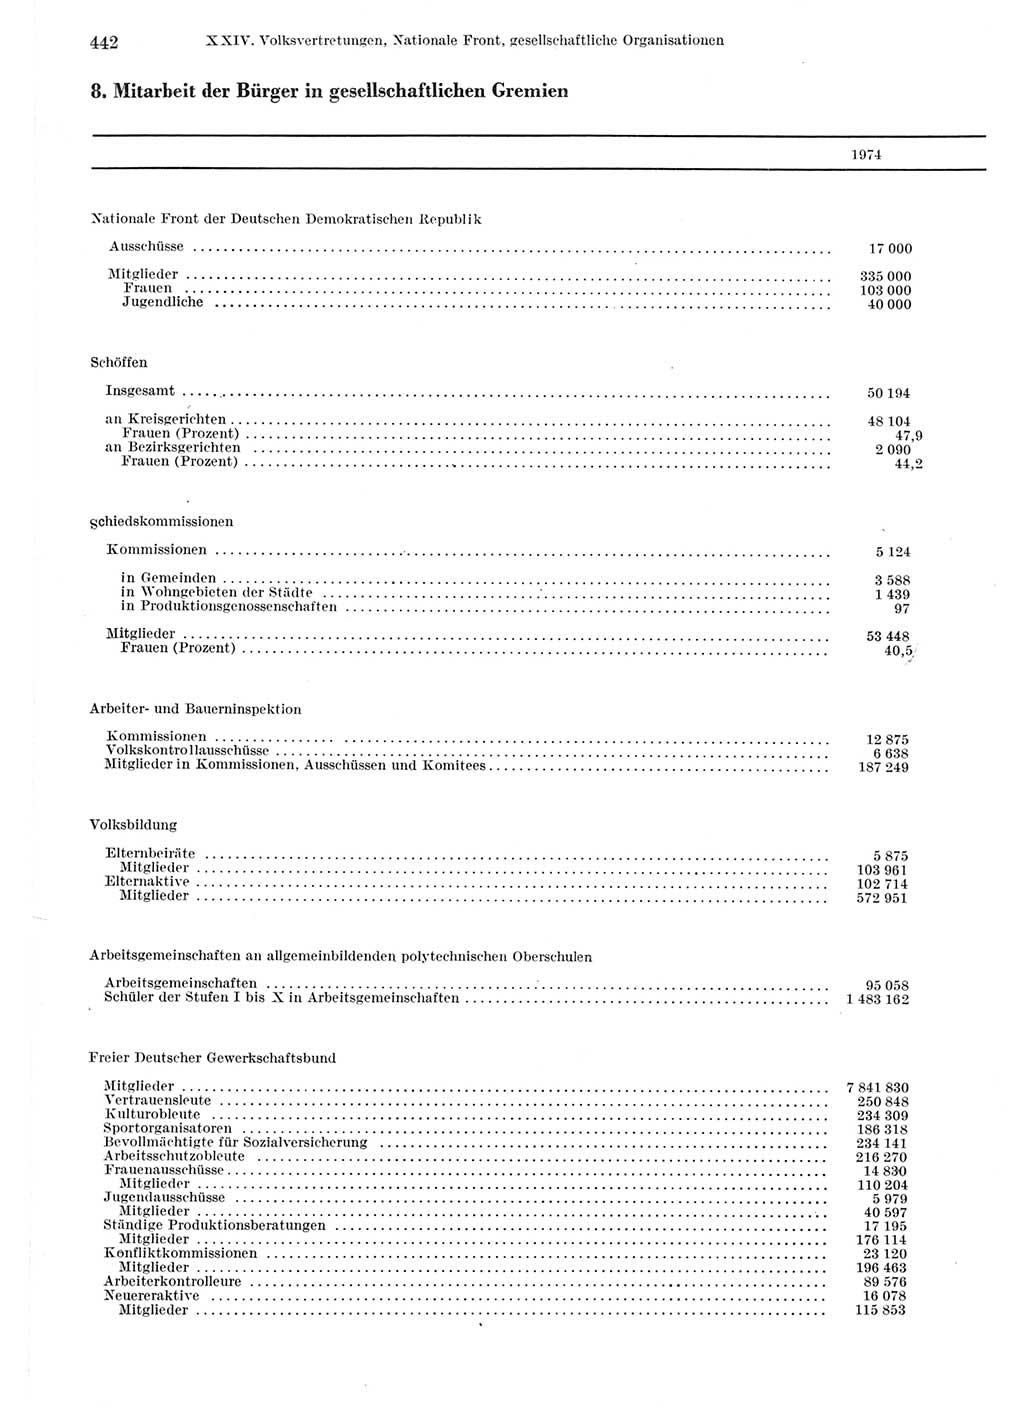 Statistisches Jahrbuch der Deutschen Demokratischen Republik (DDR) 1975, Seite 442 (Stat. Jb. DDR 1975, S. 442)